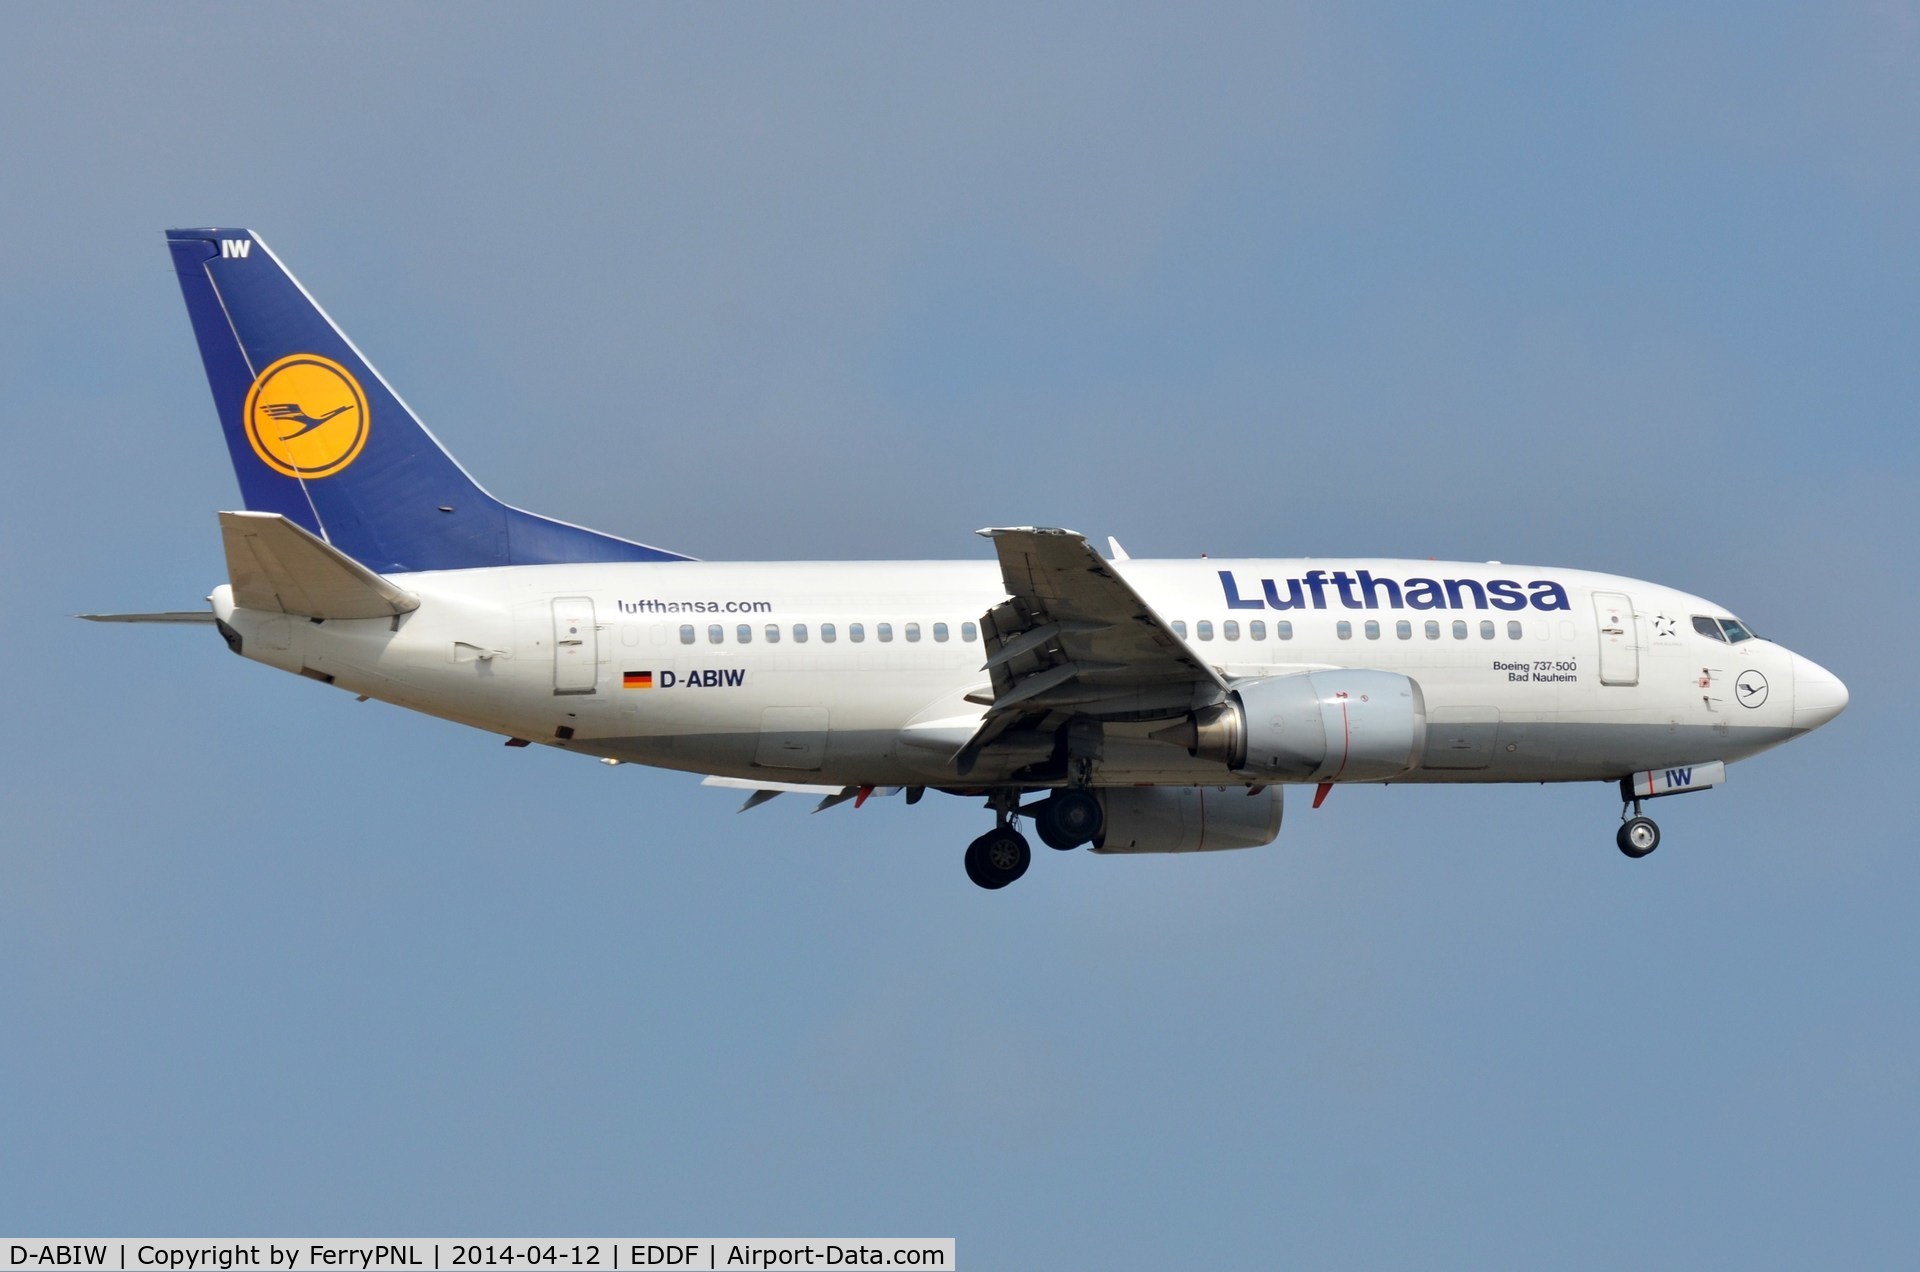 D-ABIW, 1991 Boeing 737-530 C/N 24945, Lufthansa B735. Now flying in Peru.